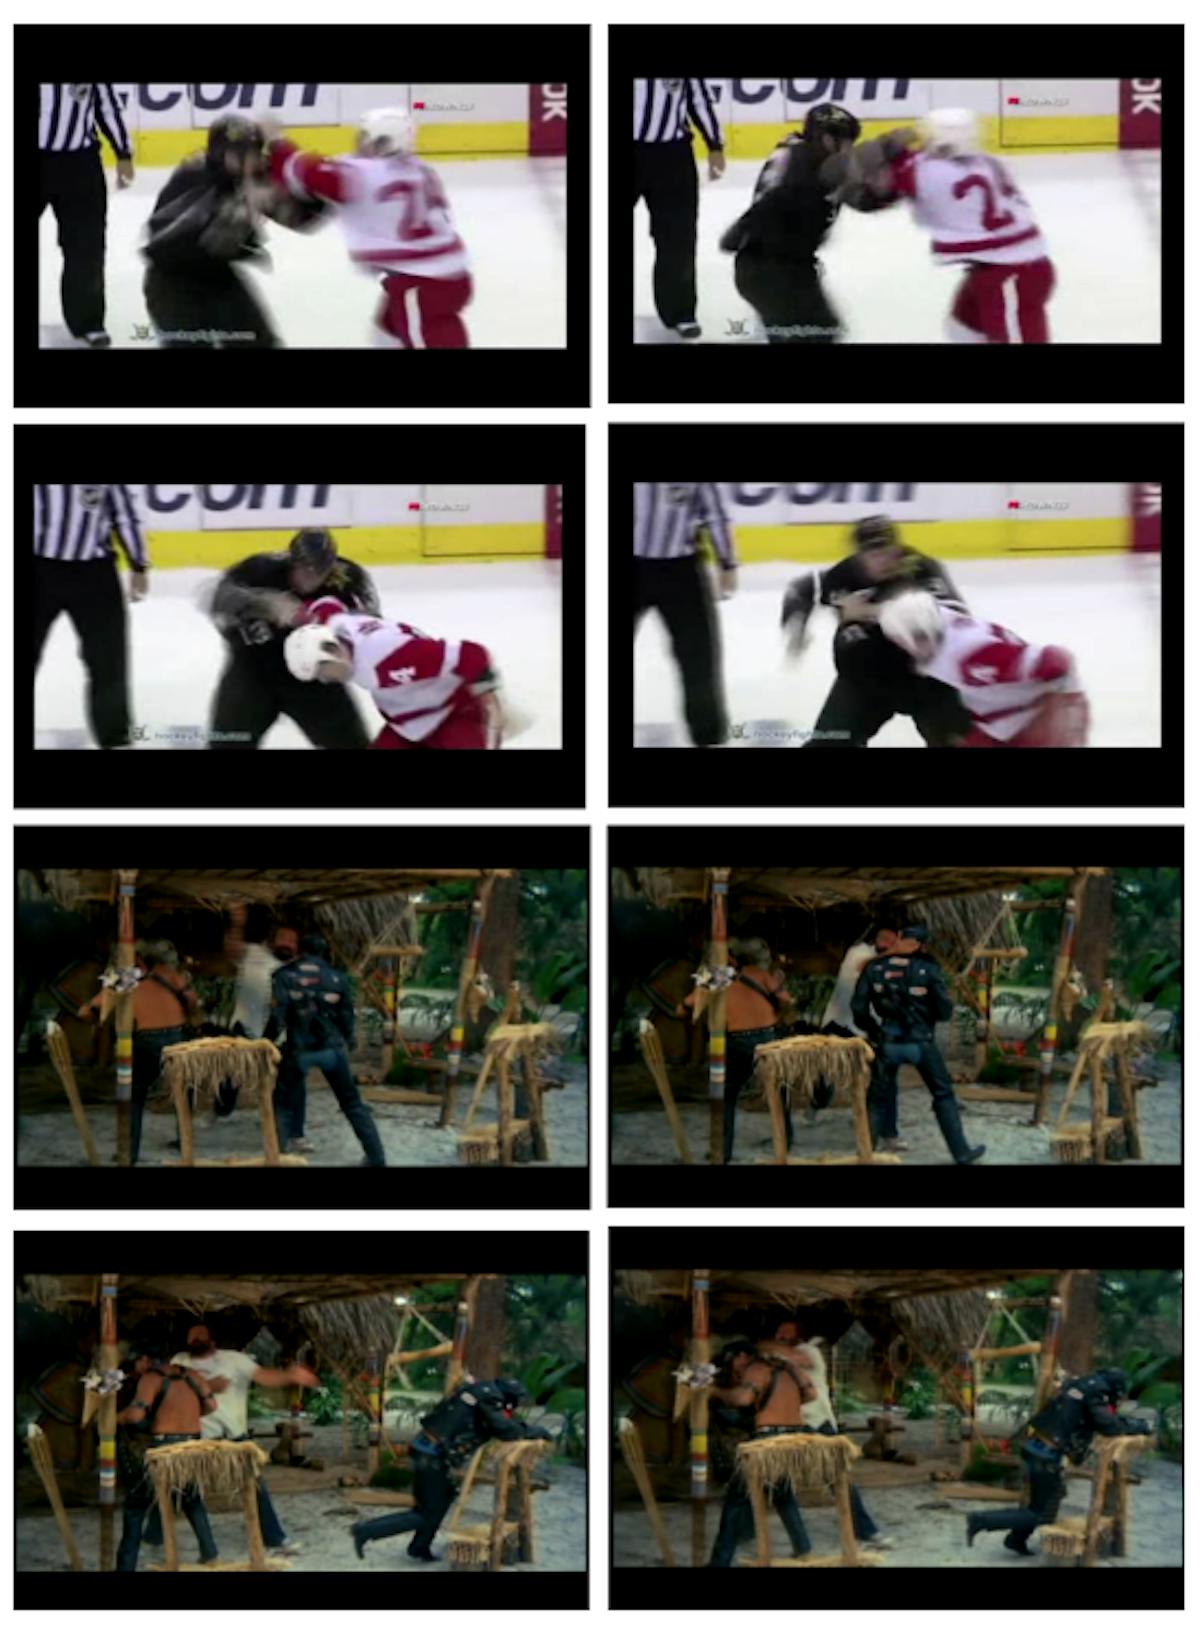 Şekil 4.1: Hokey (üstte) ve aksiyon filmi (altta) veri kümelerindeki dövüş videolarından örnek kareler.